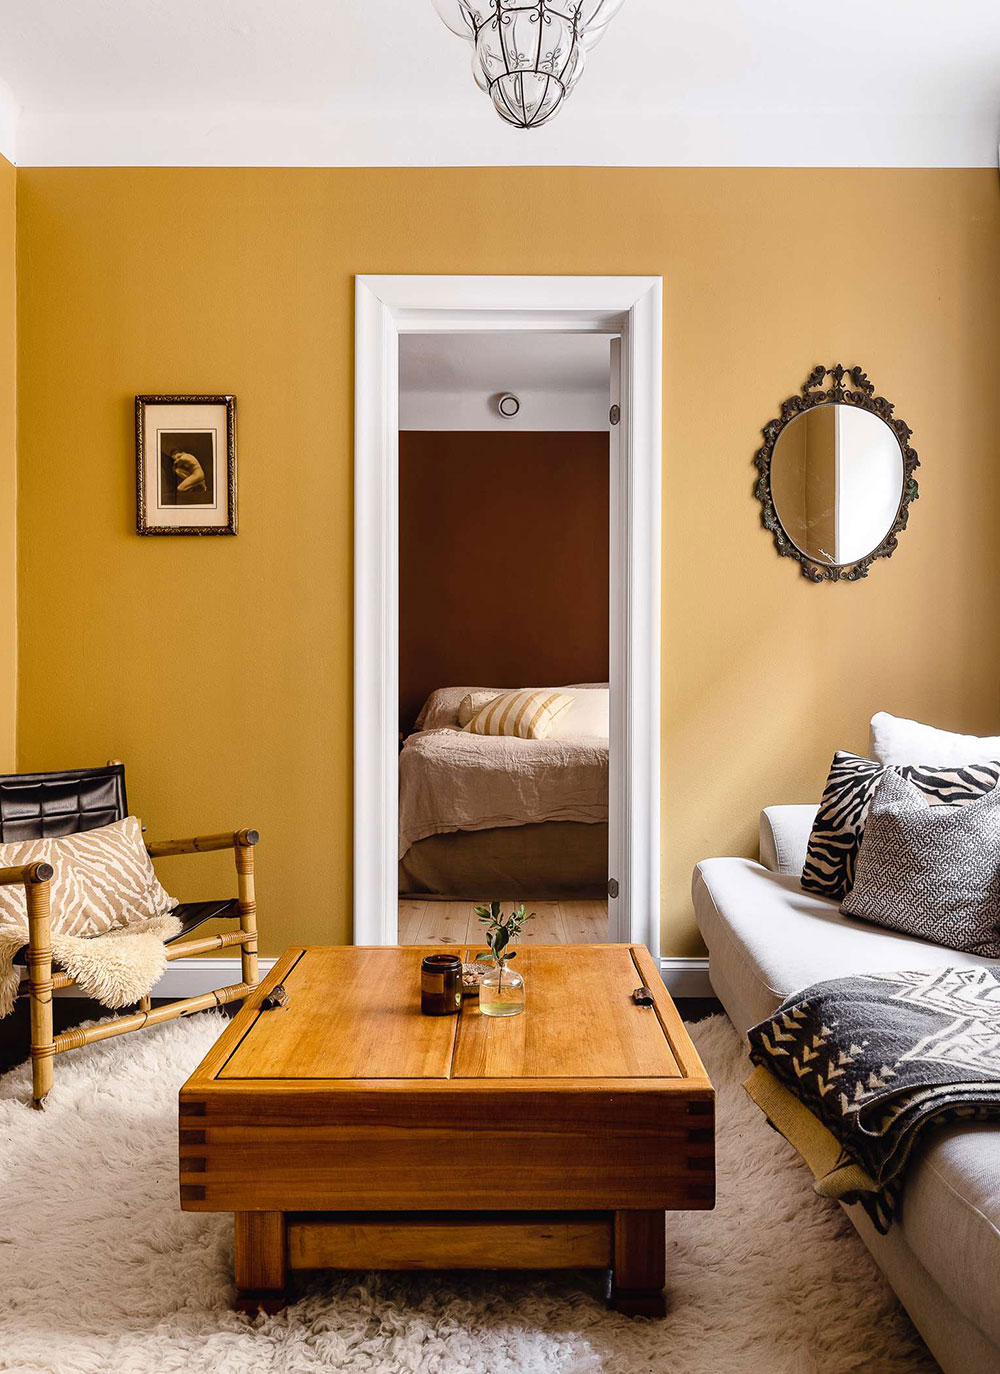 Яркие краски и винтаж: маленькая, но запоминающаяся квартира в Швеции (43 кв. м)